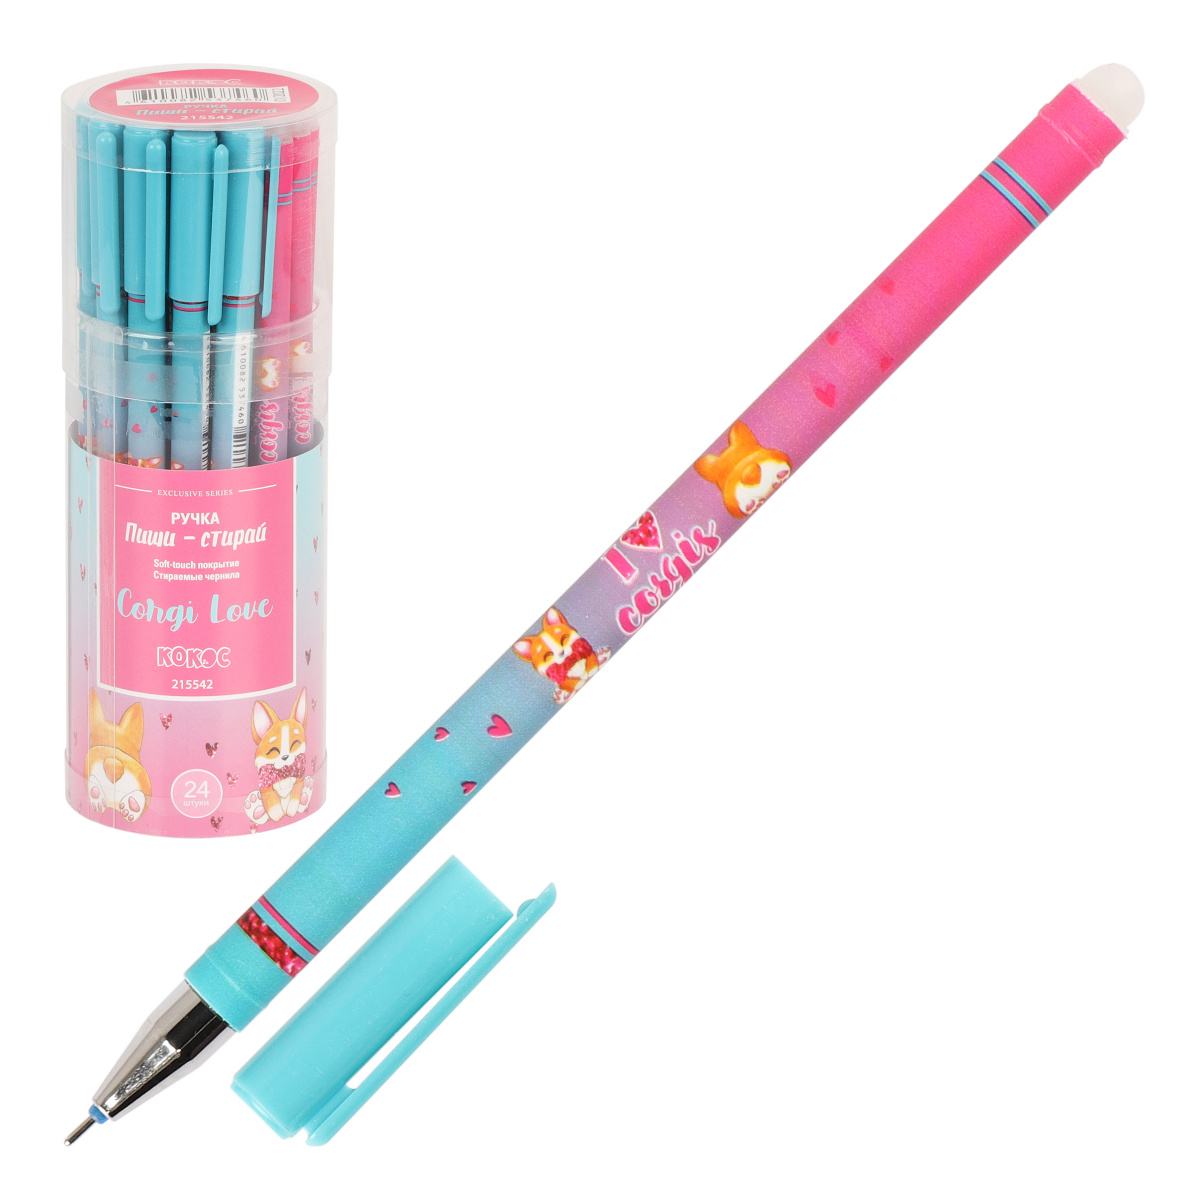 Ручка гелевая 0,5мм Пиши-стирай Corgi Love 215542 синяя | Магазин канцтоваров и игрушек Львёнок